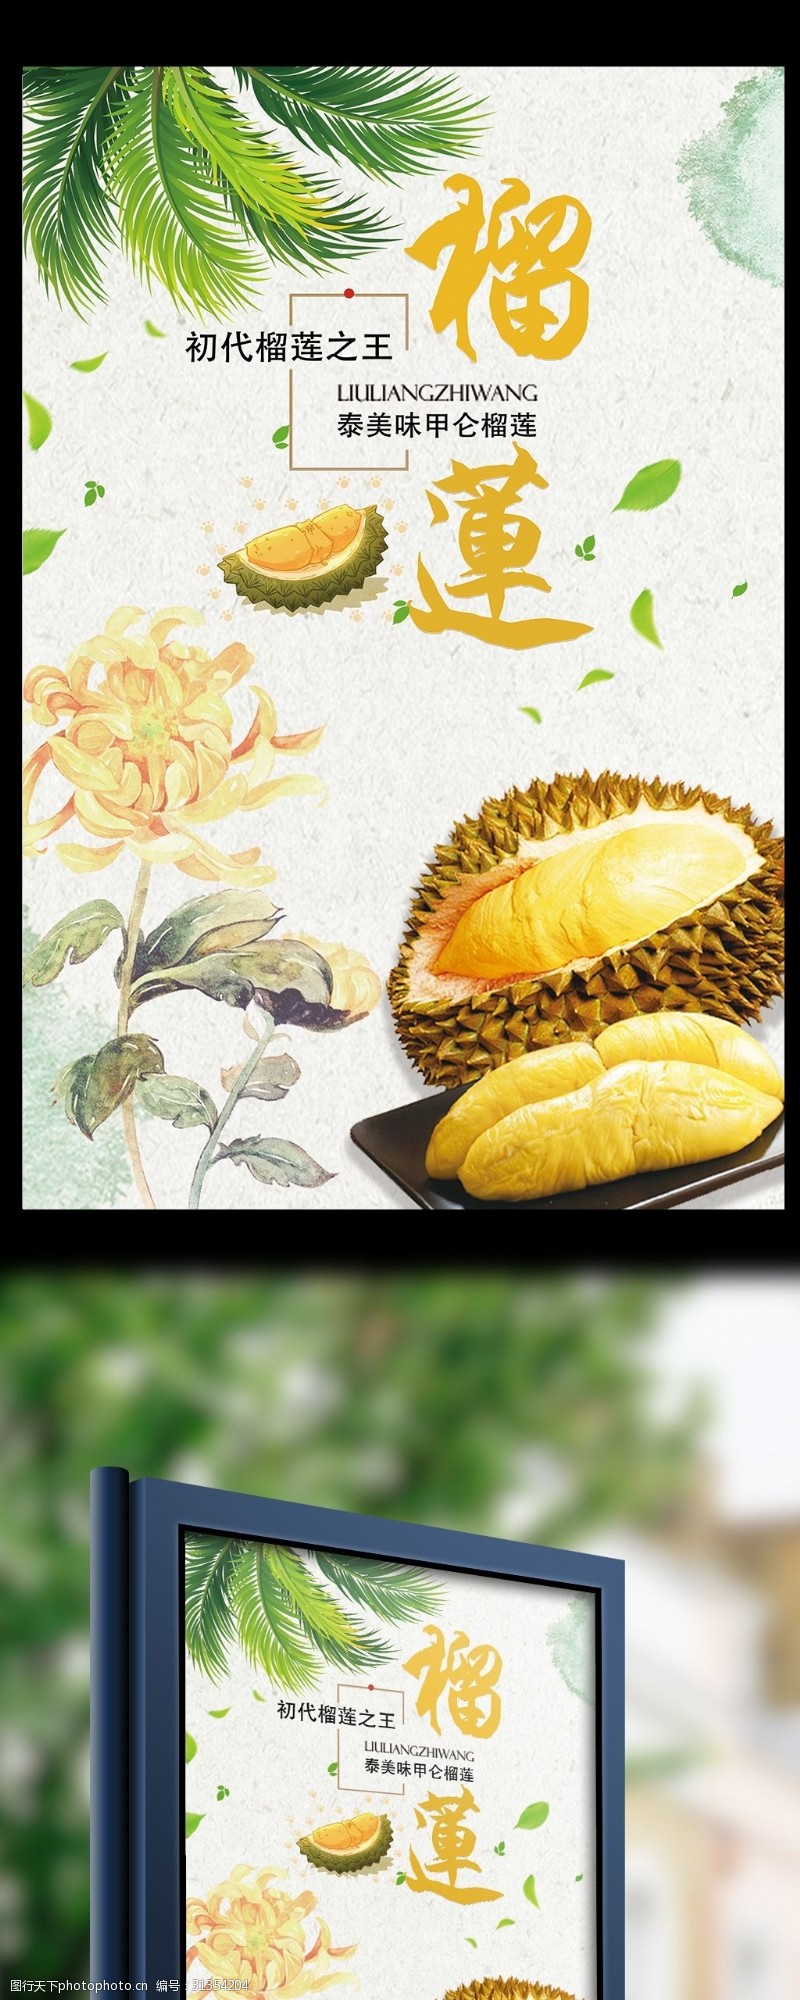 泰式海鲜简约创意泰式榴莲美食宣传海报